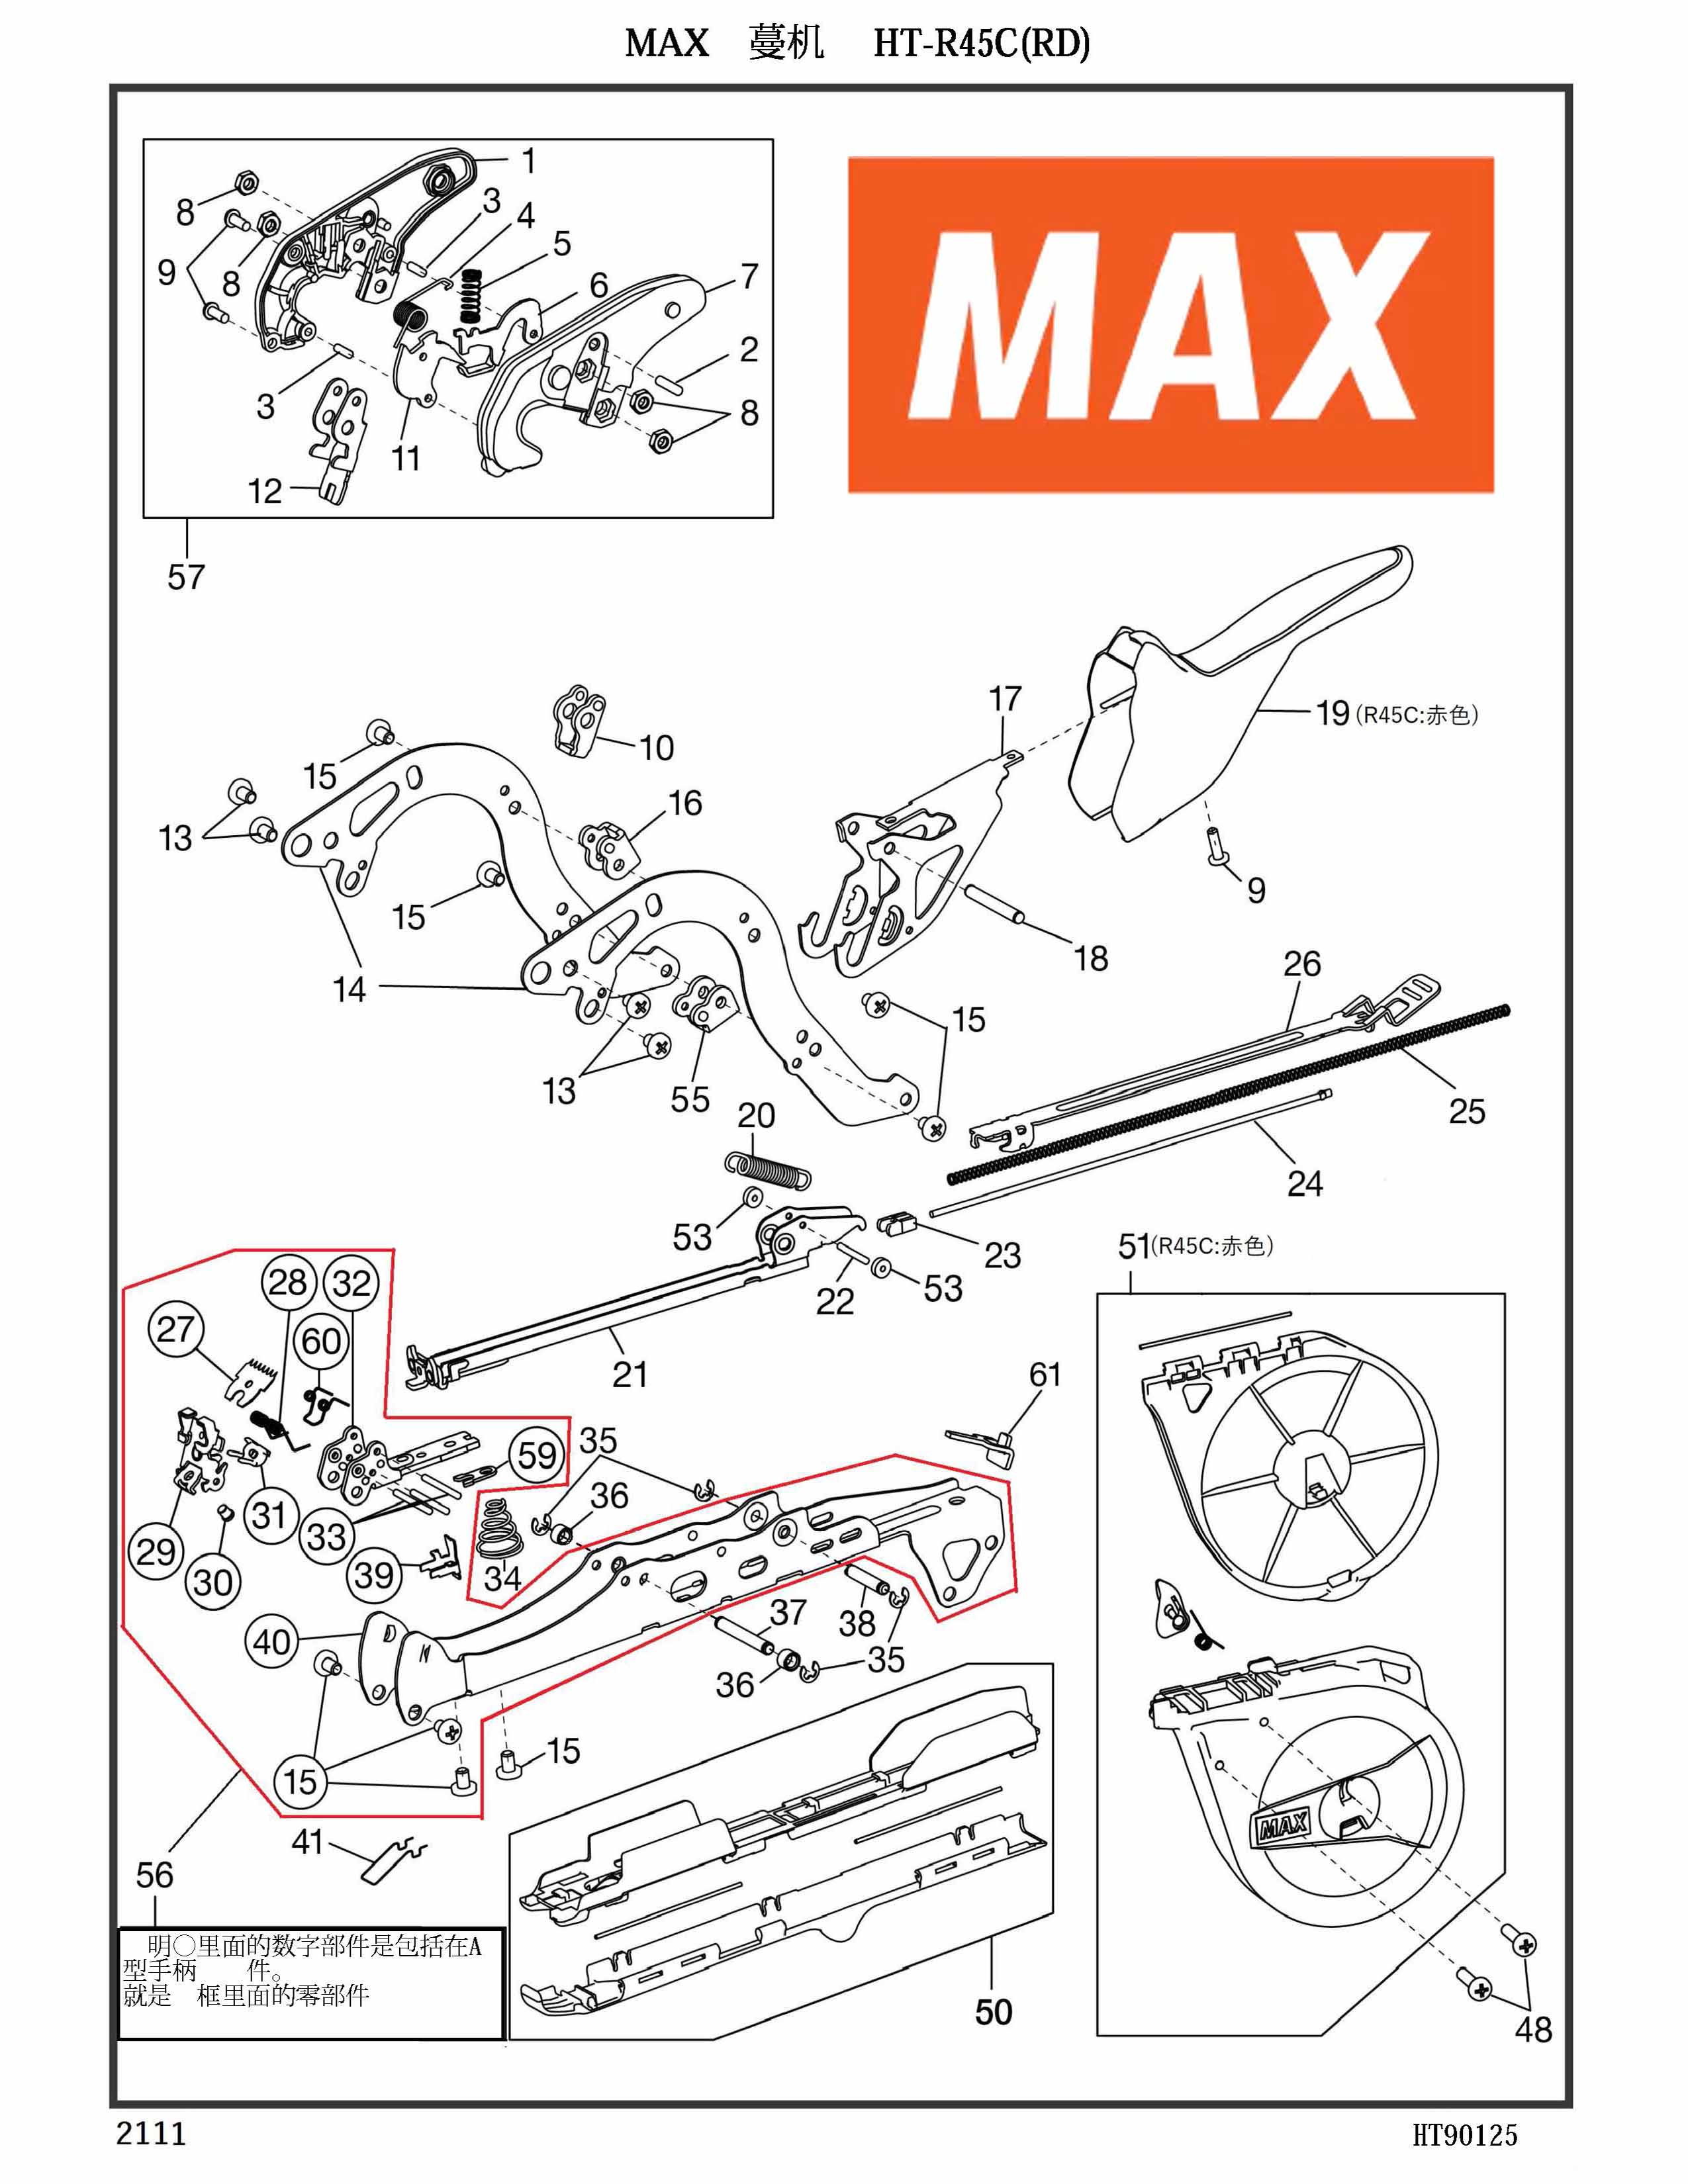 MAX Tapener Part AA05716 SCREW BIND 4X6 (S-TIGHT) Fits MAX HT-R45L(O) R45C(RD) HT-S45E HT-R1 HT-R2 #15